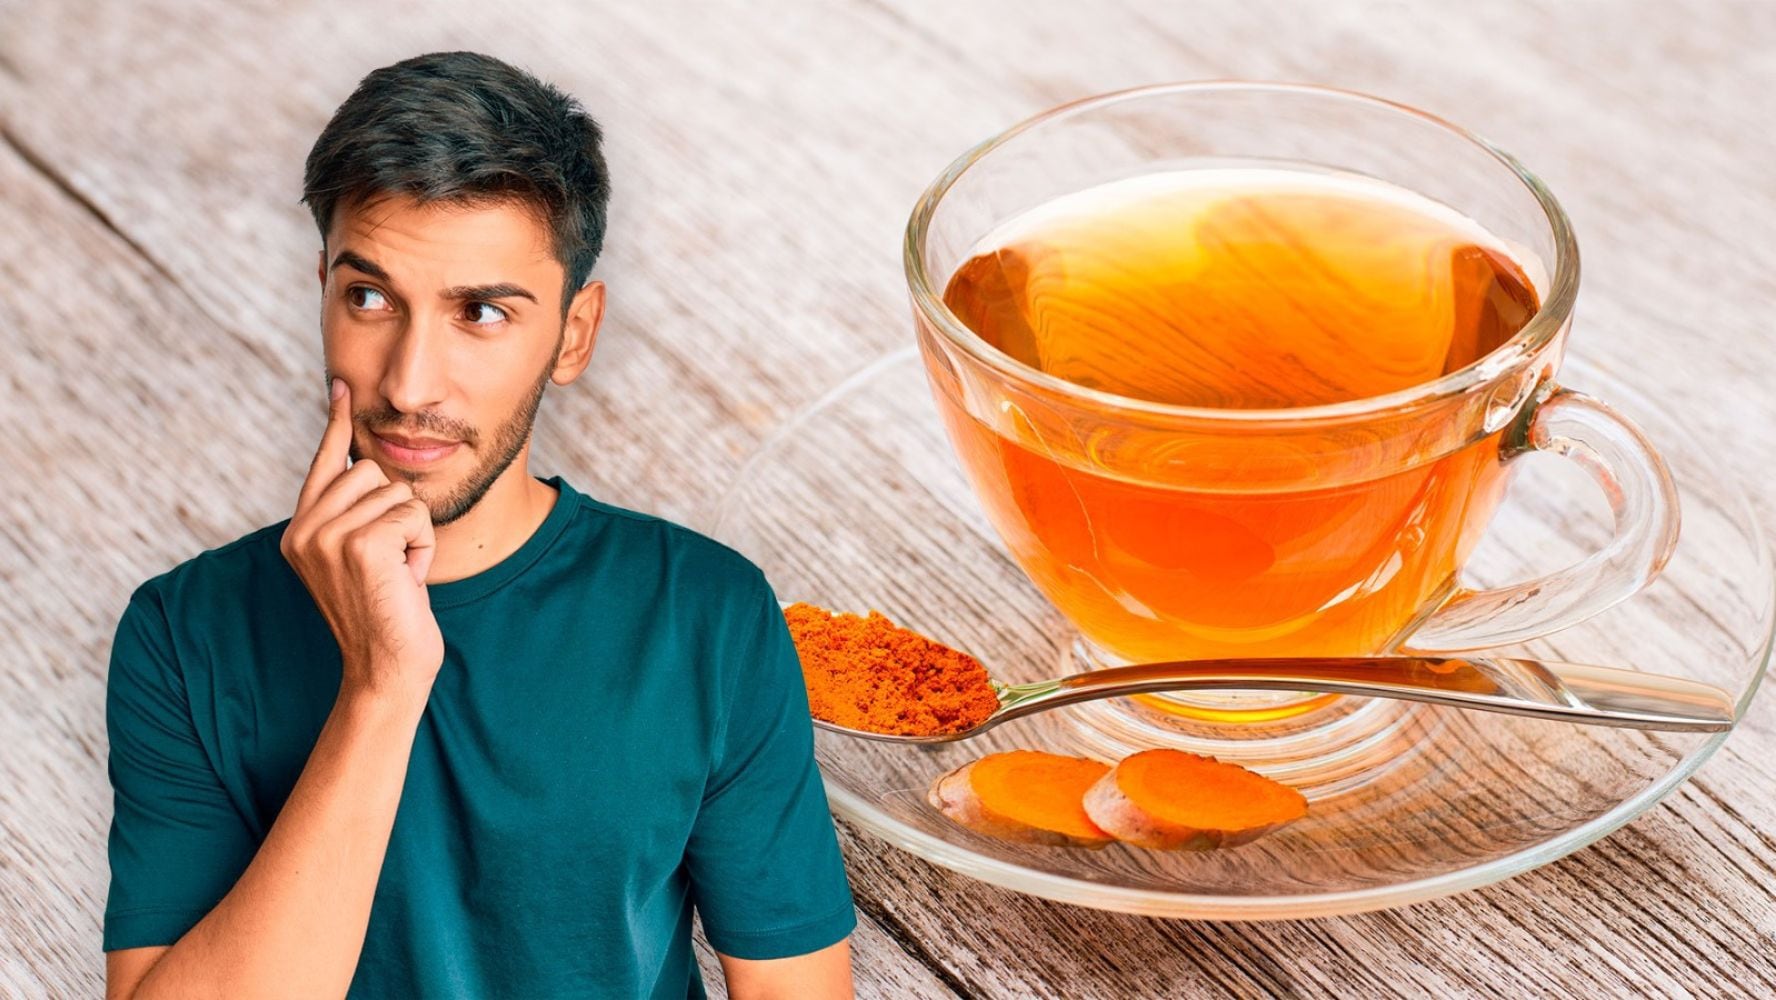 En altas cantidades, el té de cúrcuma con pimienta puede tener algunos efectos secundarios en la salud. (Foto: Especial)